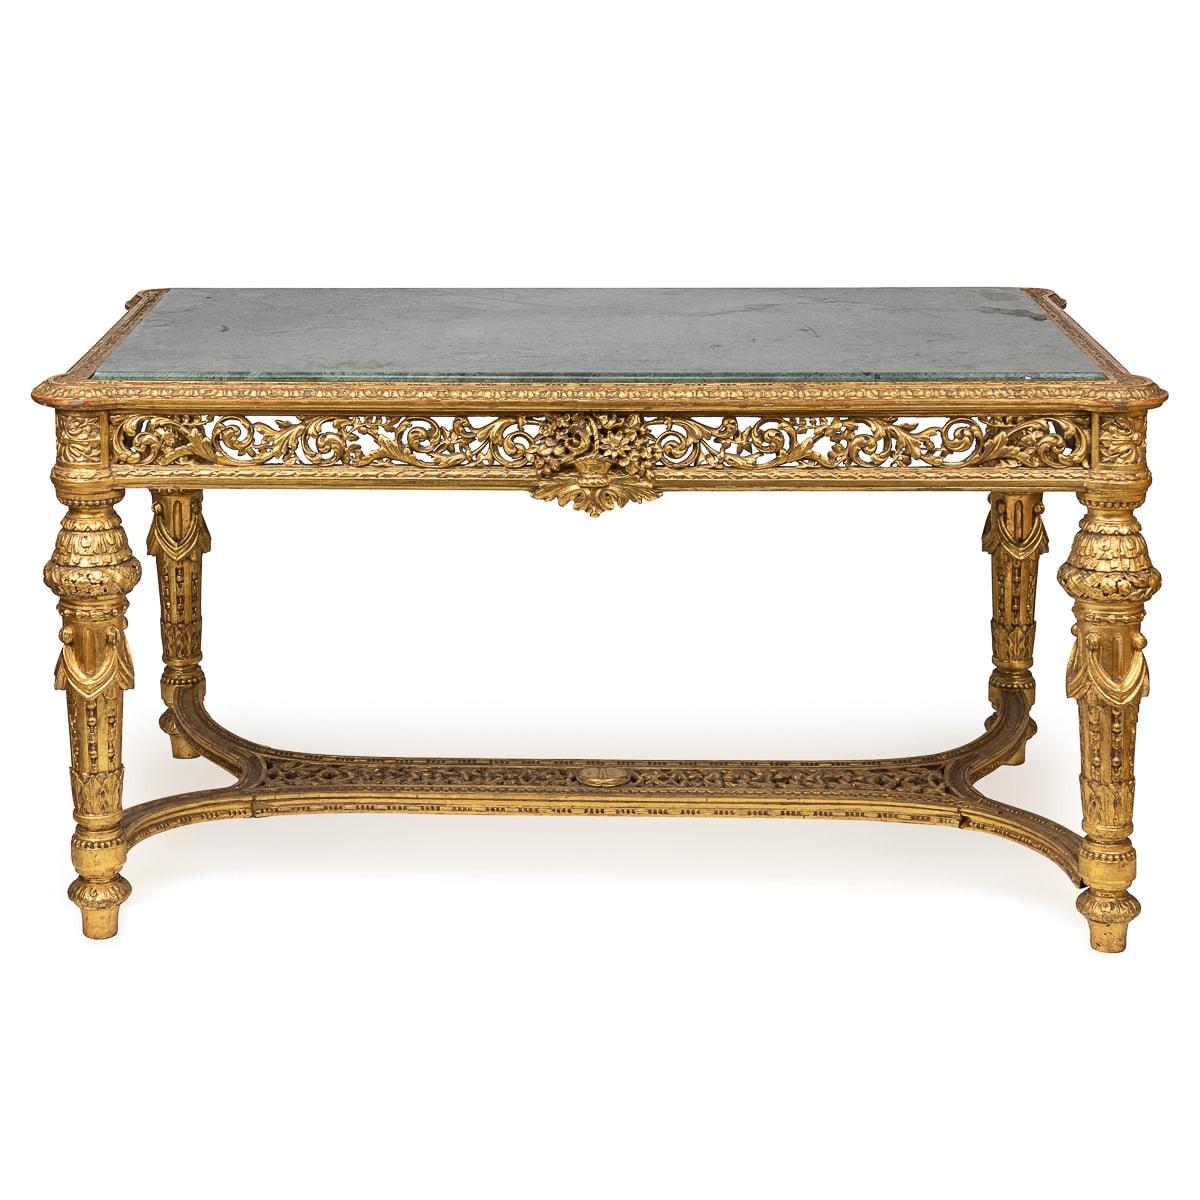 Ancienne table de salon Louis XVI de la fin du XIXe siècle, en bois doré, mariant avec goût le bois doré et le marbre vert d'alpage. Ornée de motifs de feuillage sculptés de façon complexe sur ses côtés, ses pieds et sa structure, cette table